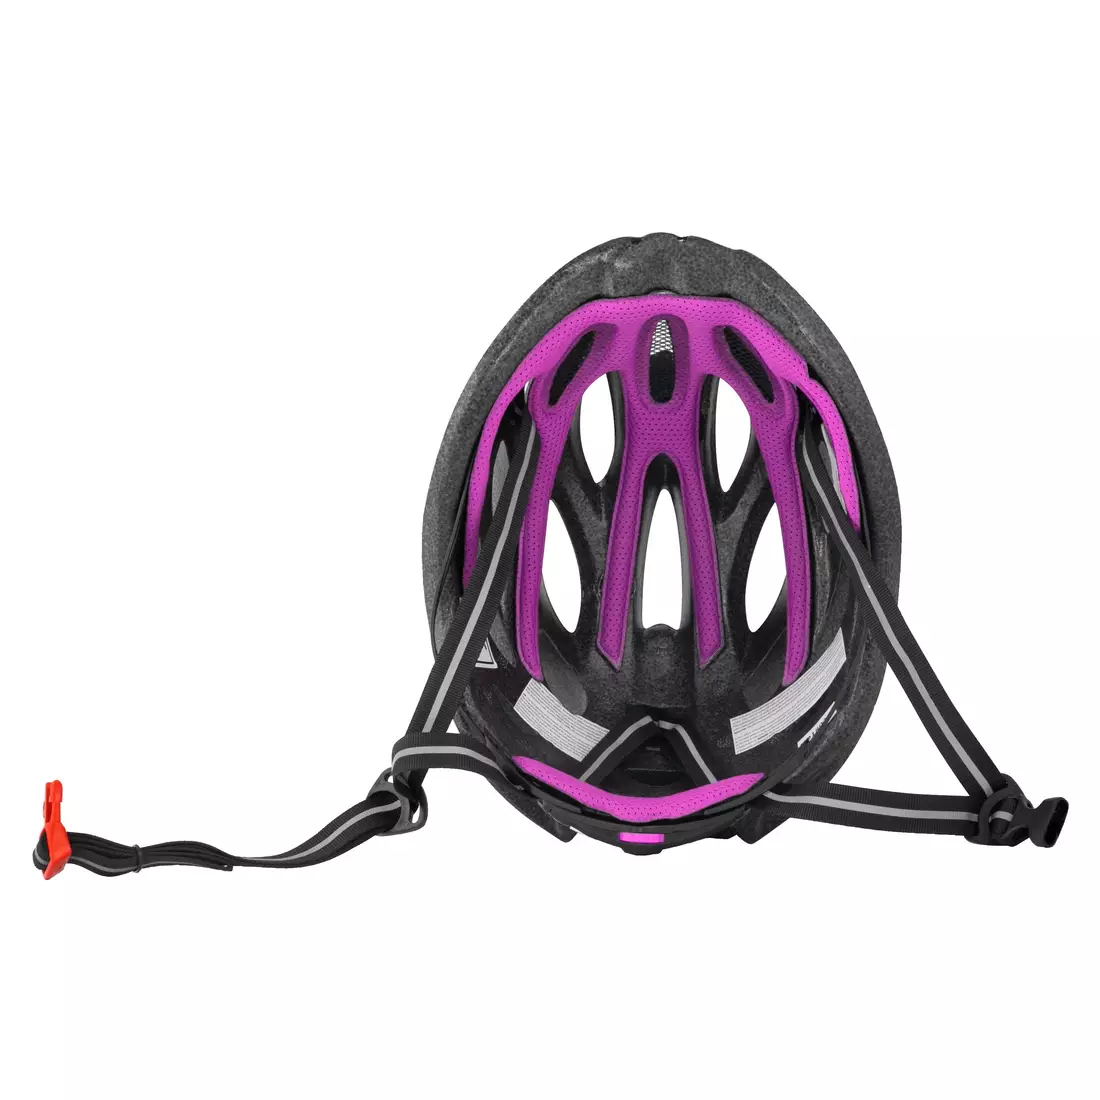 FORCE casca de bicicleta BULL HUE, negru și roz, 9029051